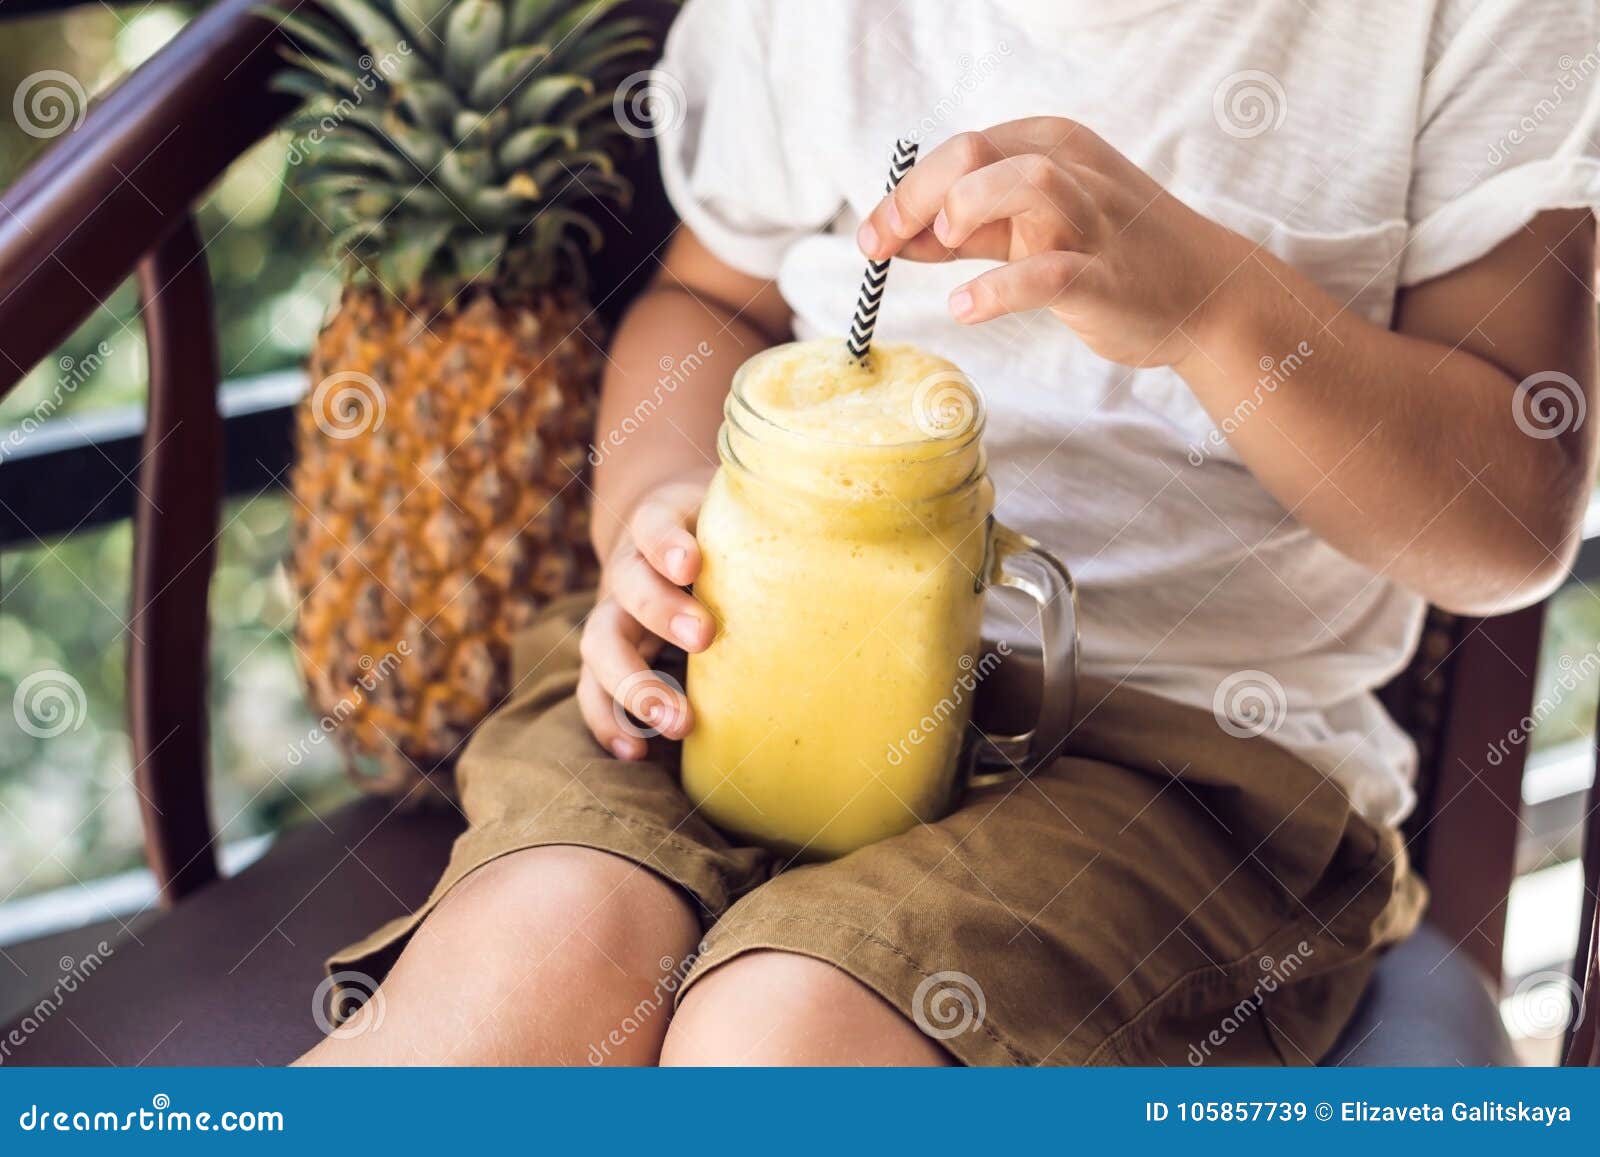 Зачем мужчинам пить ананасовый сок. Пацаны и ананасовый сок. Ананасовый сок в руке фото. Смузи на веранде с девушками фото. Мужчина пьет ананасовый сок.